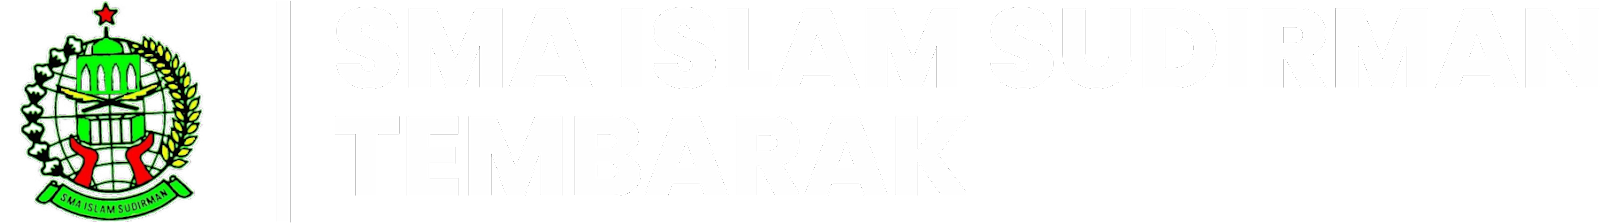 Blog SMA Islam Sudirman Tembarak